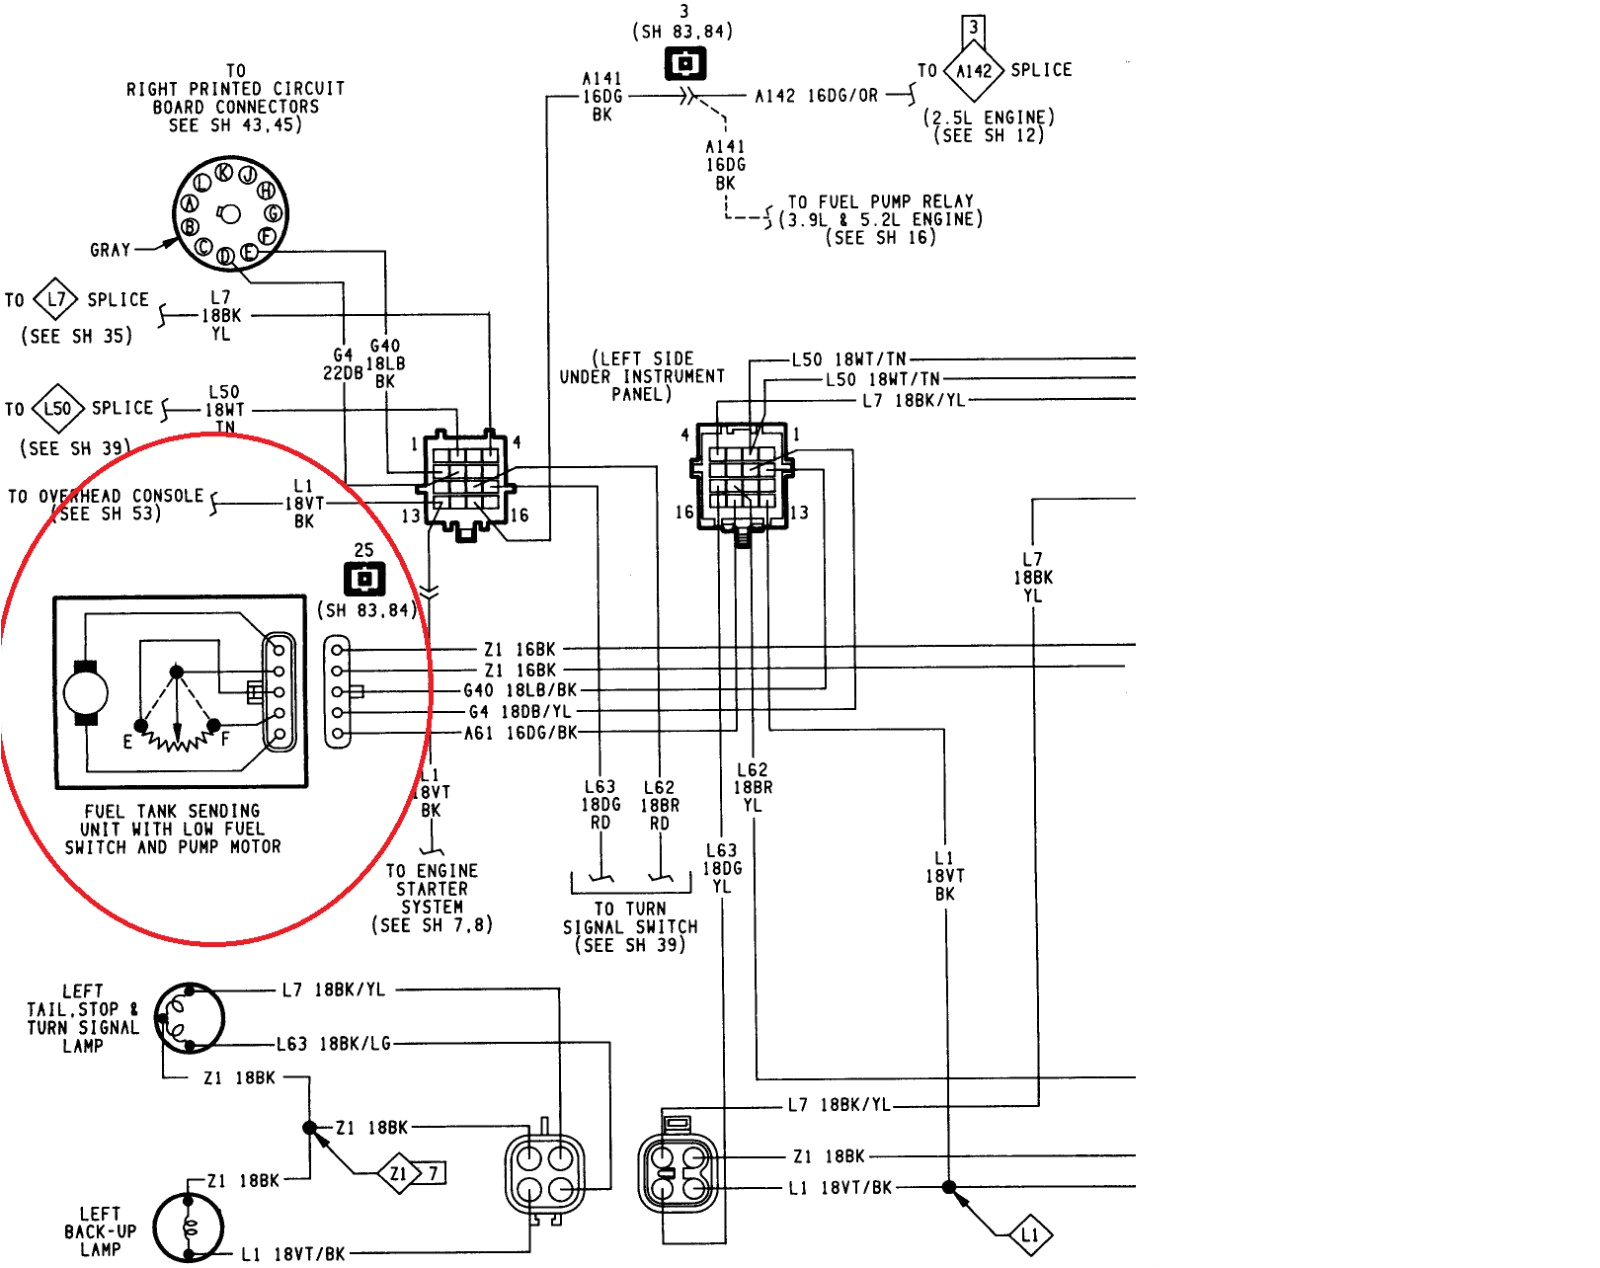 suzuki df140 wiring diagram luxury suzuki outboard tachometer wiring diagram data wiring e280a2 jpg